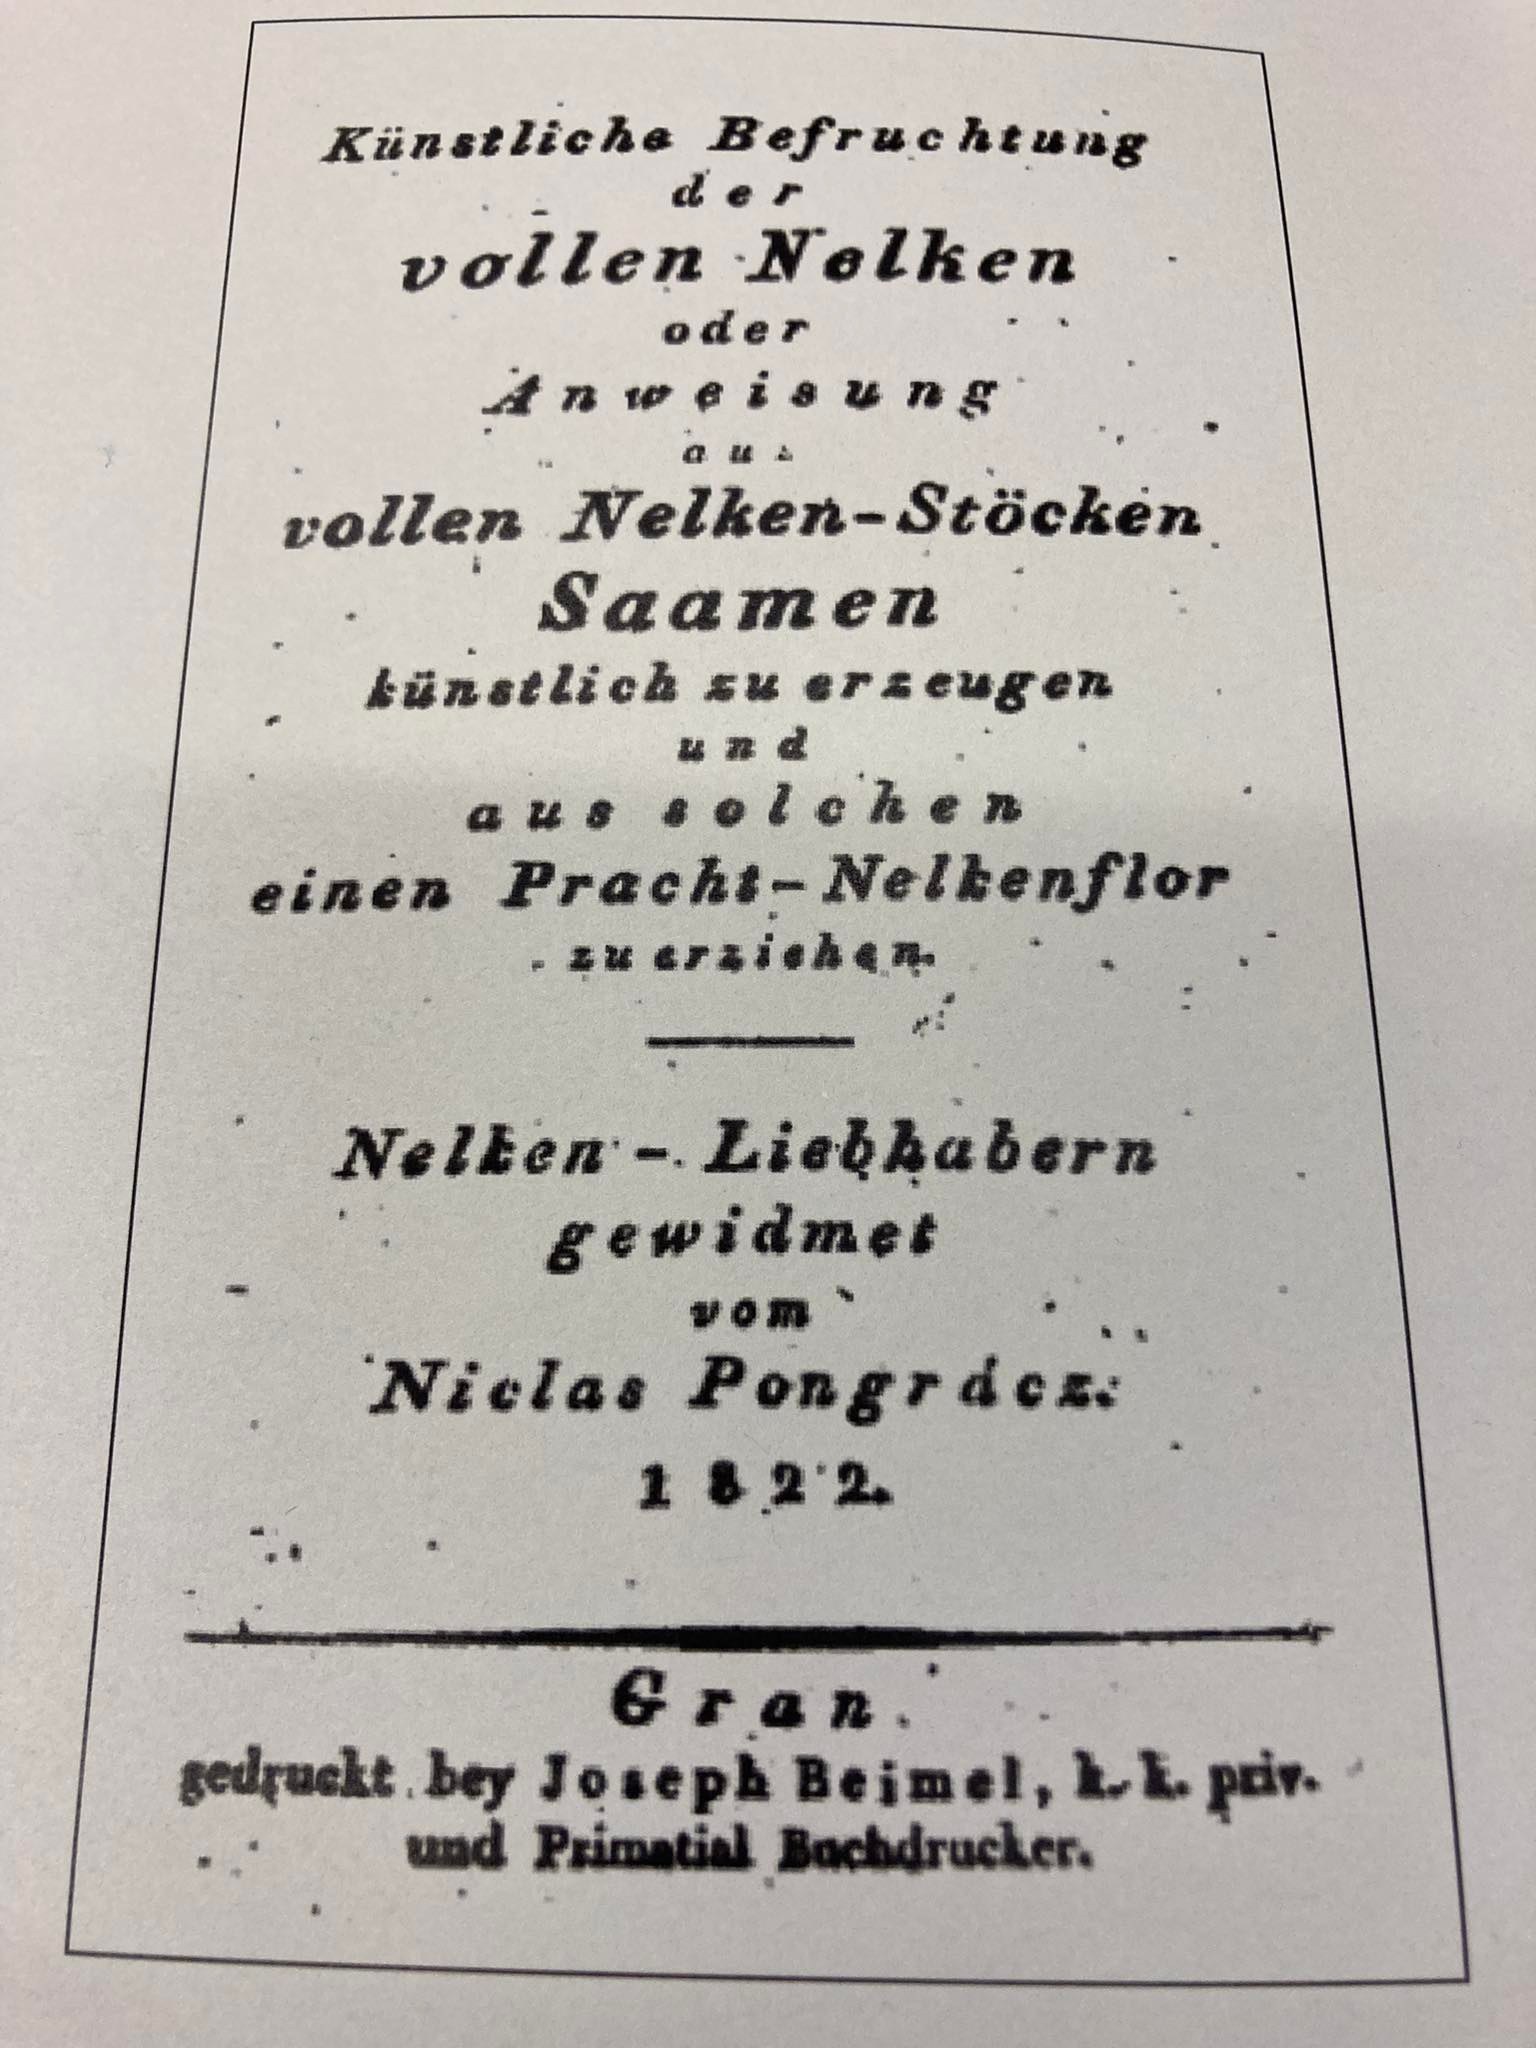 Régi nyomtatott német dokumentum, amely alatt cím és szöveg szerepel, esetleg egy könyvoldal vagy füzet, enyhén foltos és elöregedett megjelenéssel.